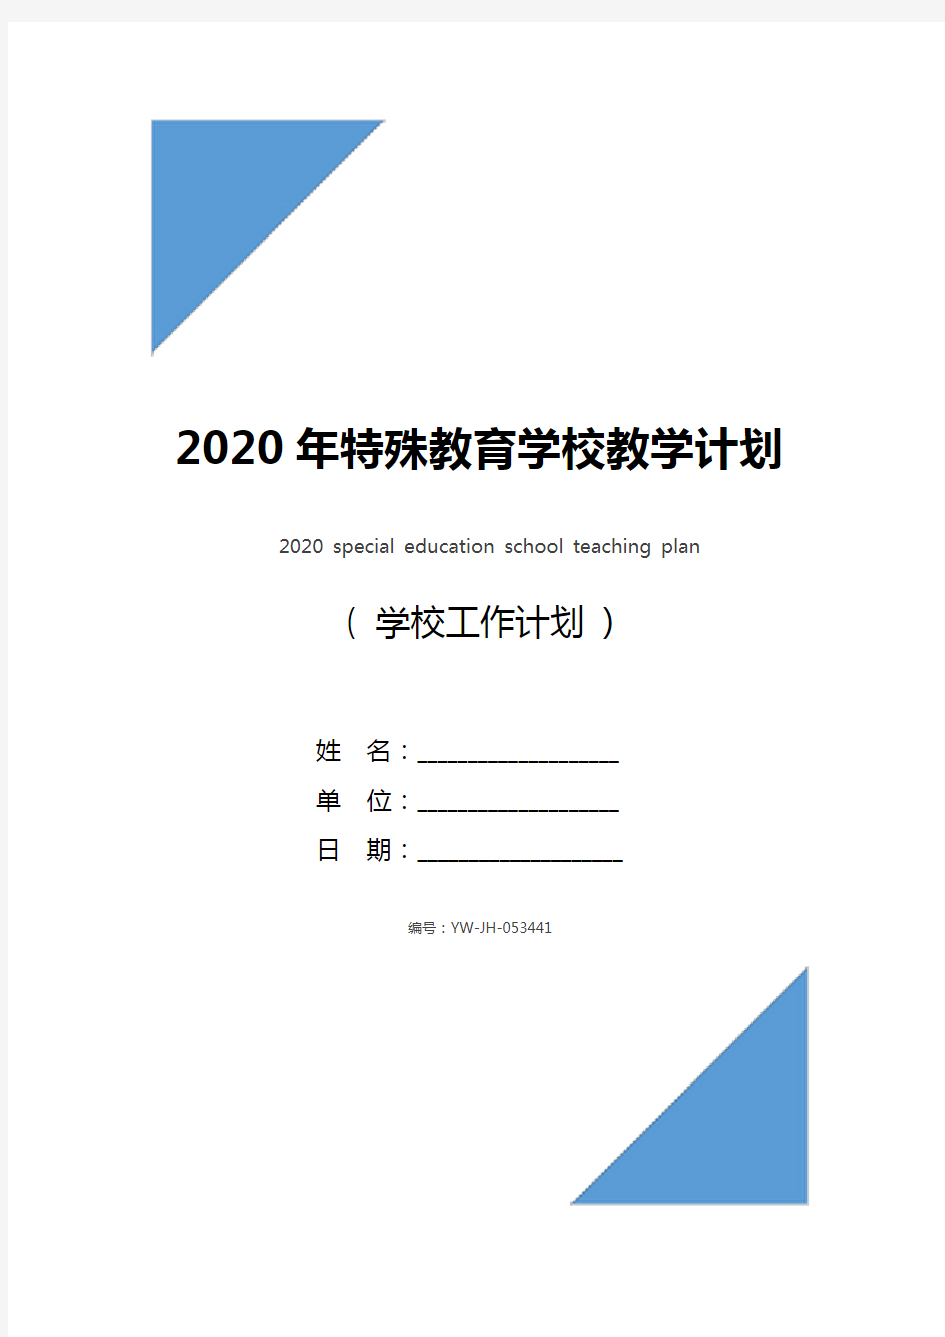 2020年特殊教育学校教学计划